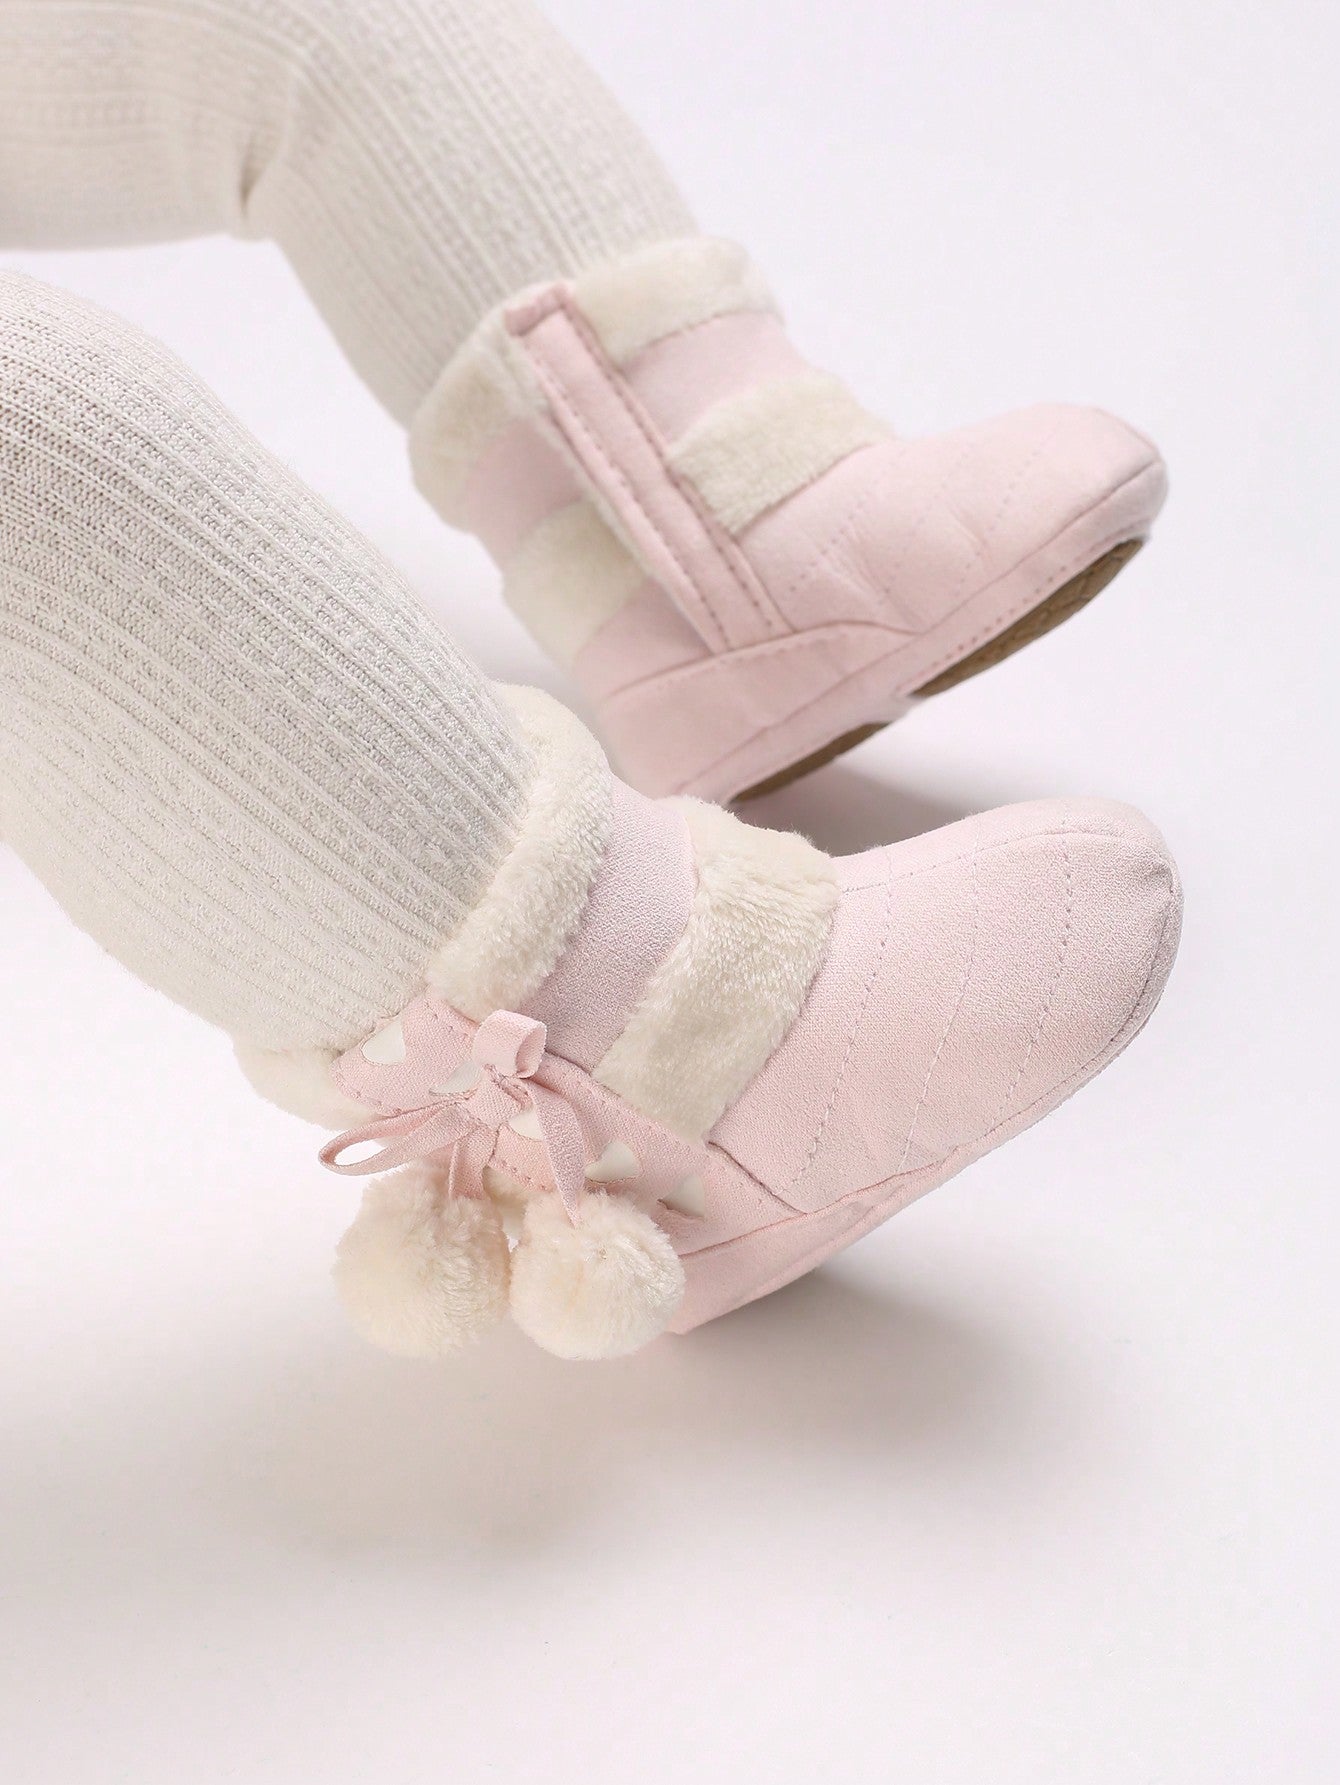 حذاء للرضع بقاعدة ناعمة سميكة لفصل الخريف والشتاء ومناسب للأطفال من عمر 0-12 شهرًا مع غطاء للقدم وجوارب حذاء مزخرفة بكرة محببة ودافئة